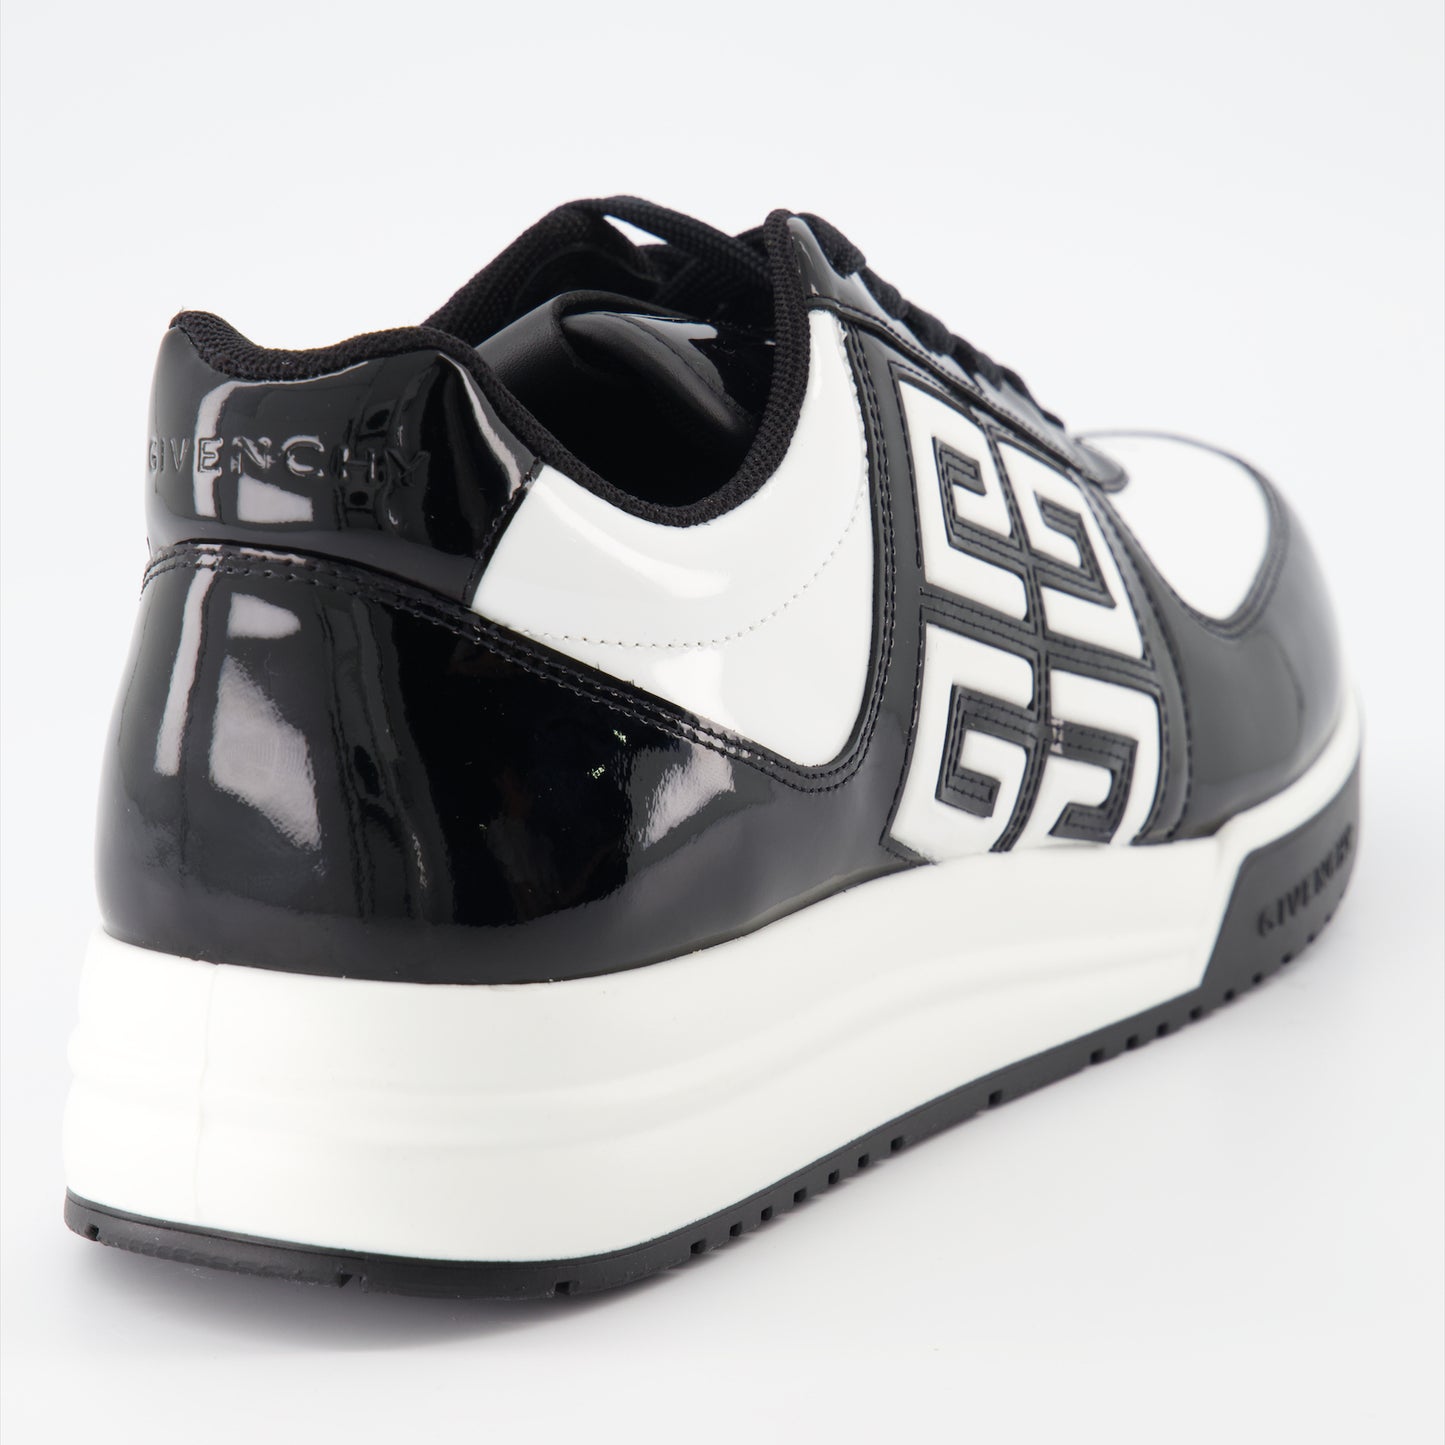 G4 sneakers